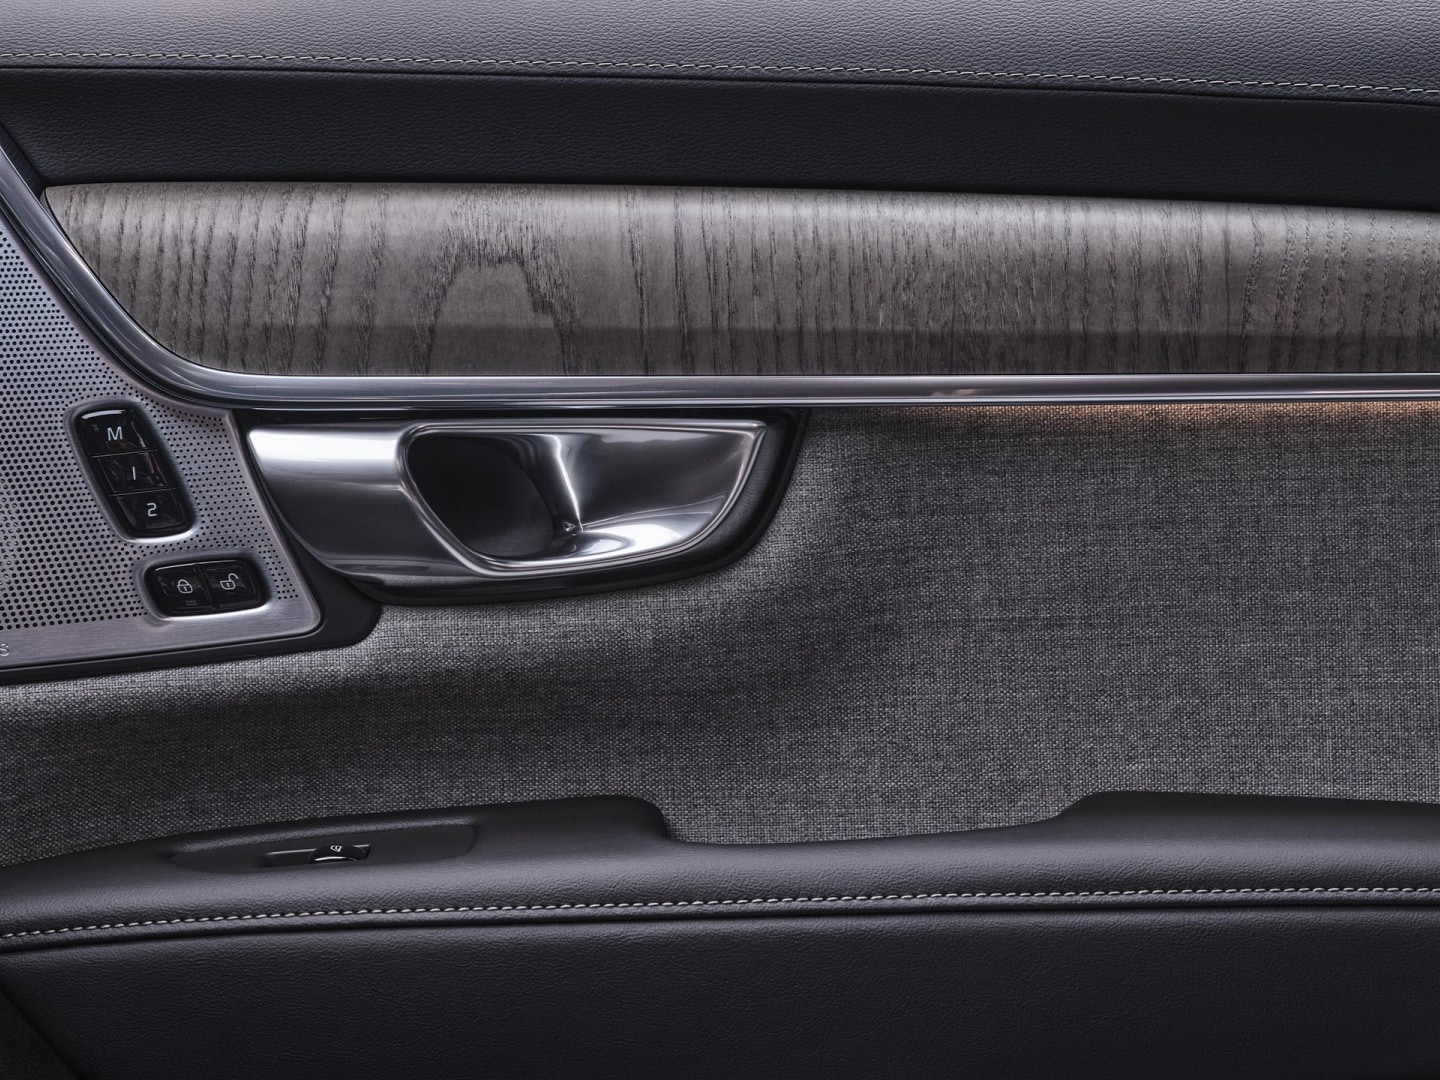 Vista interior de la puerta del copiloto del Volvo V90 híbrido enchufable.